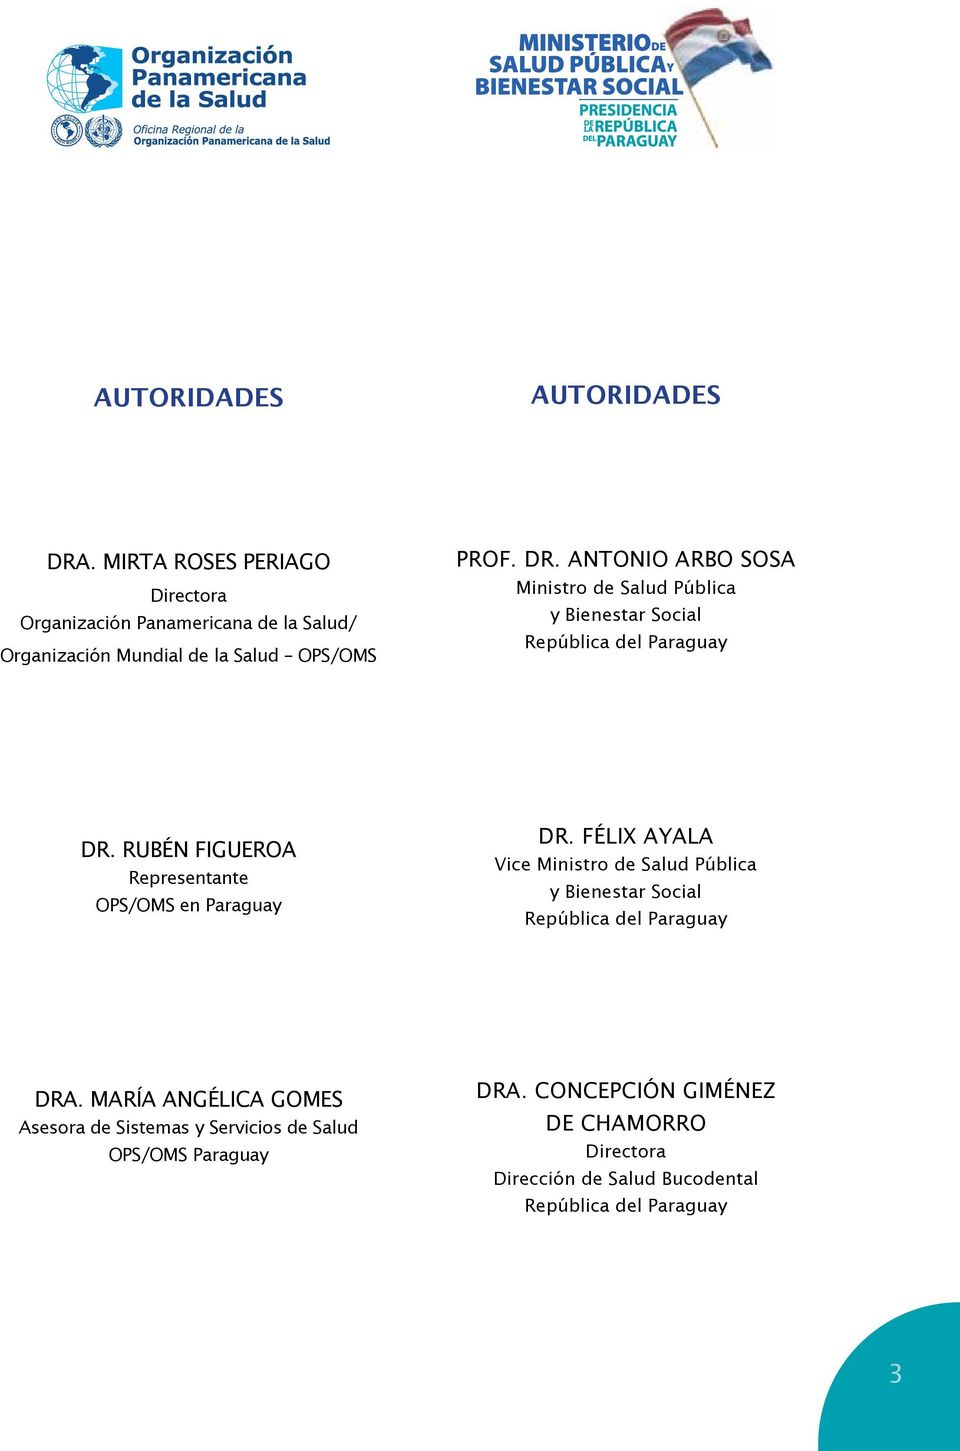 ANTONIO ARBO SOSA Ministro de Salud Pública y Bienestar Social República del Paraguay DR.